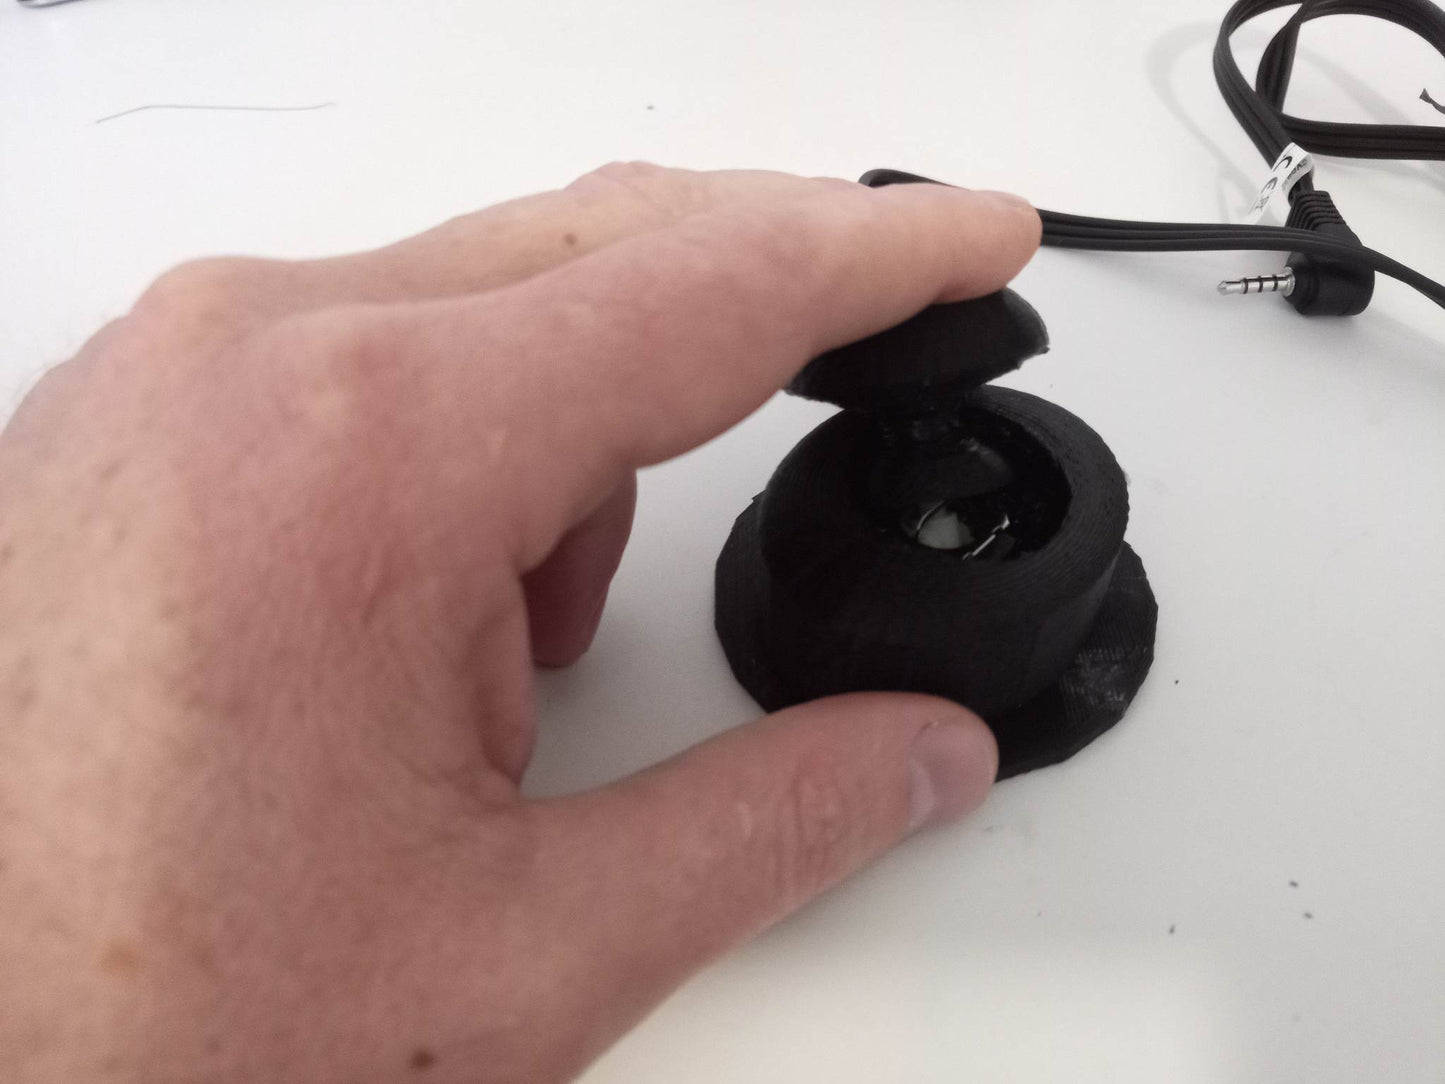 Large mushroom analog joystick - jack socket